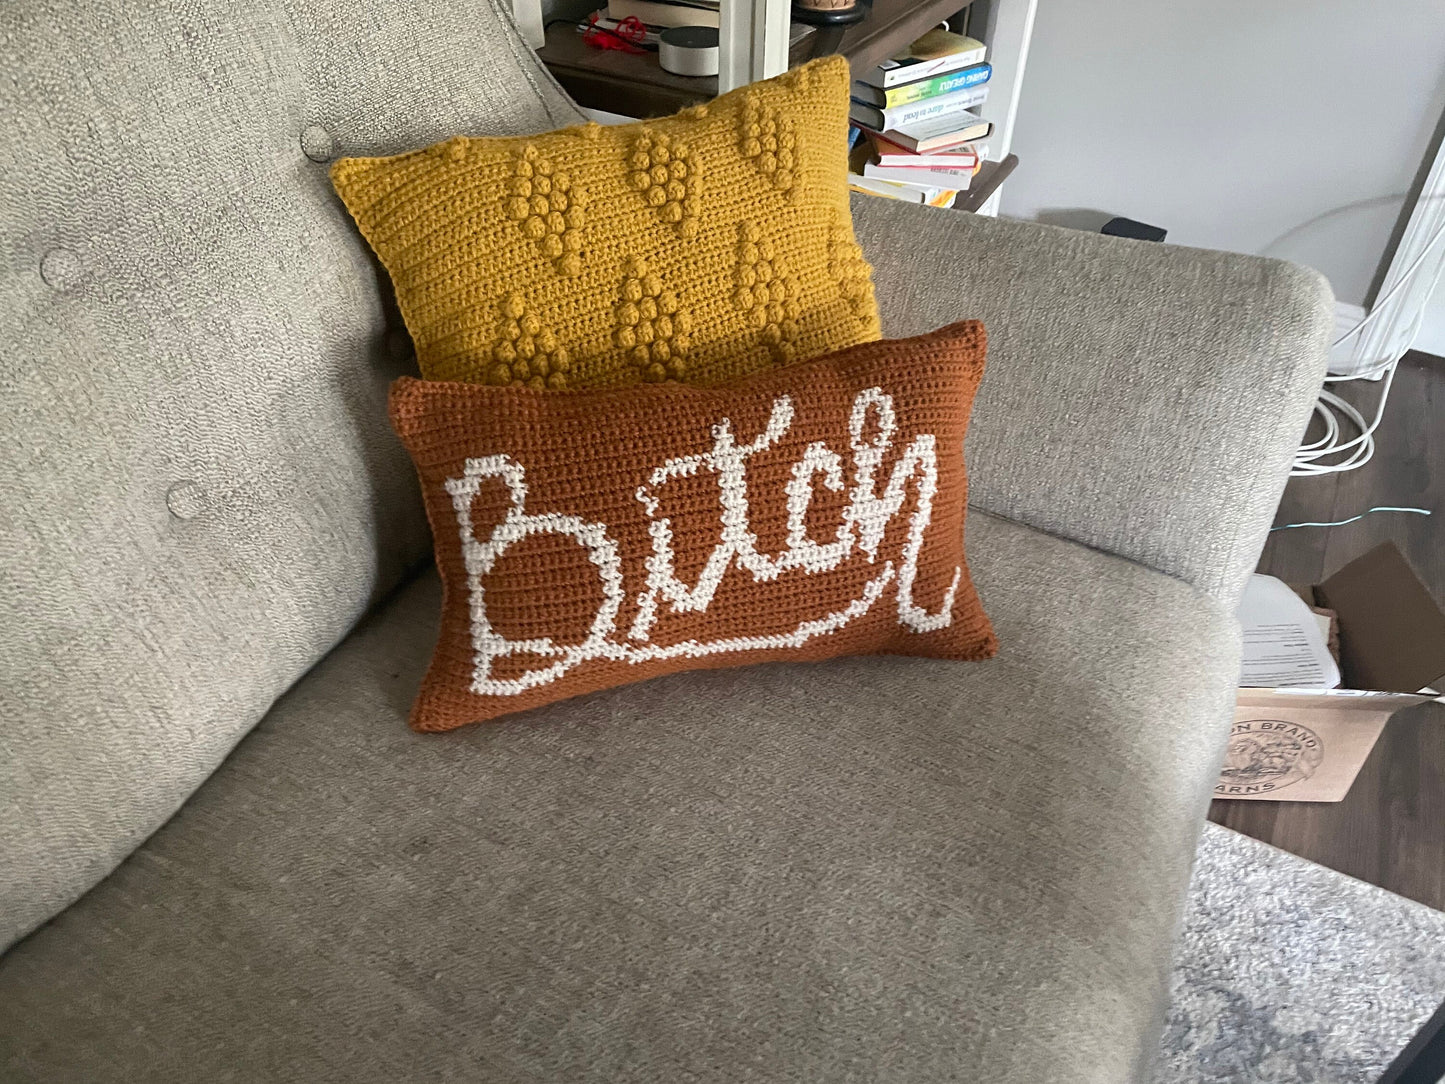 CROCHET PATTERN- Bitch Colorwork Crochet Pillow